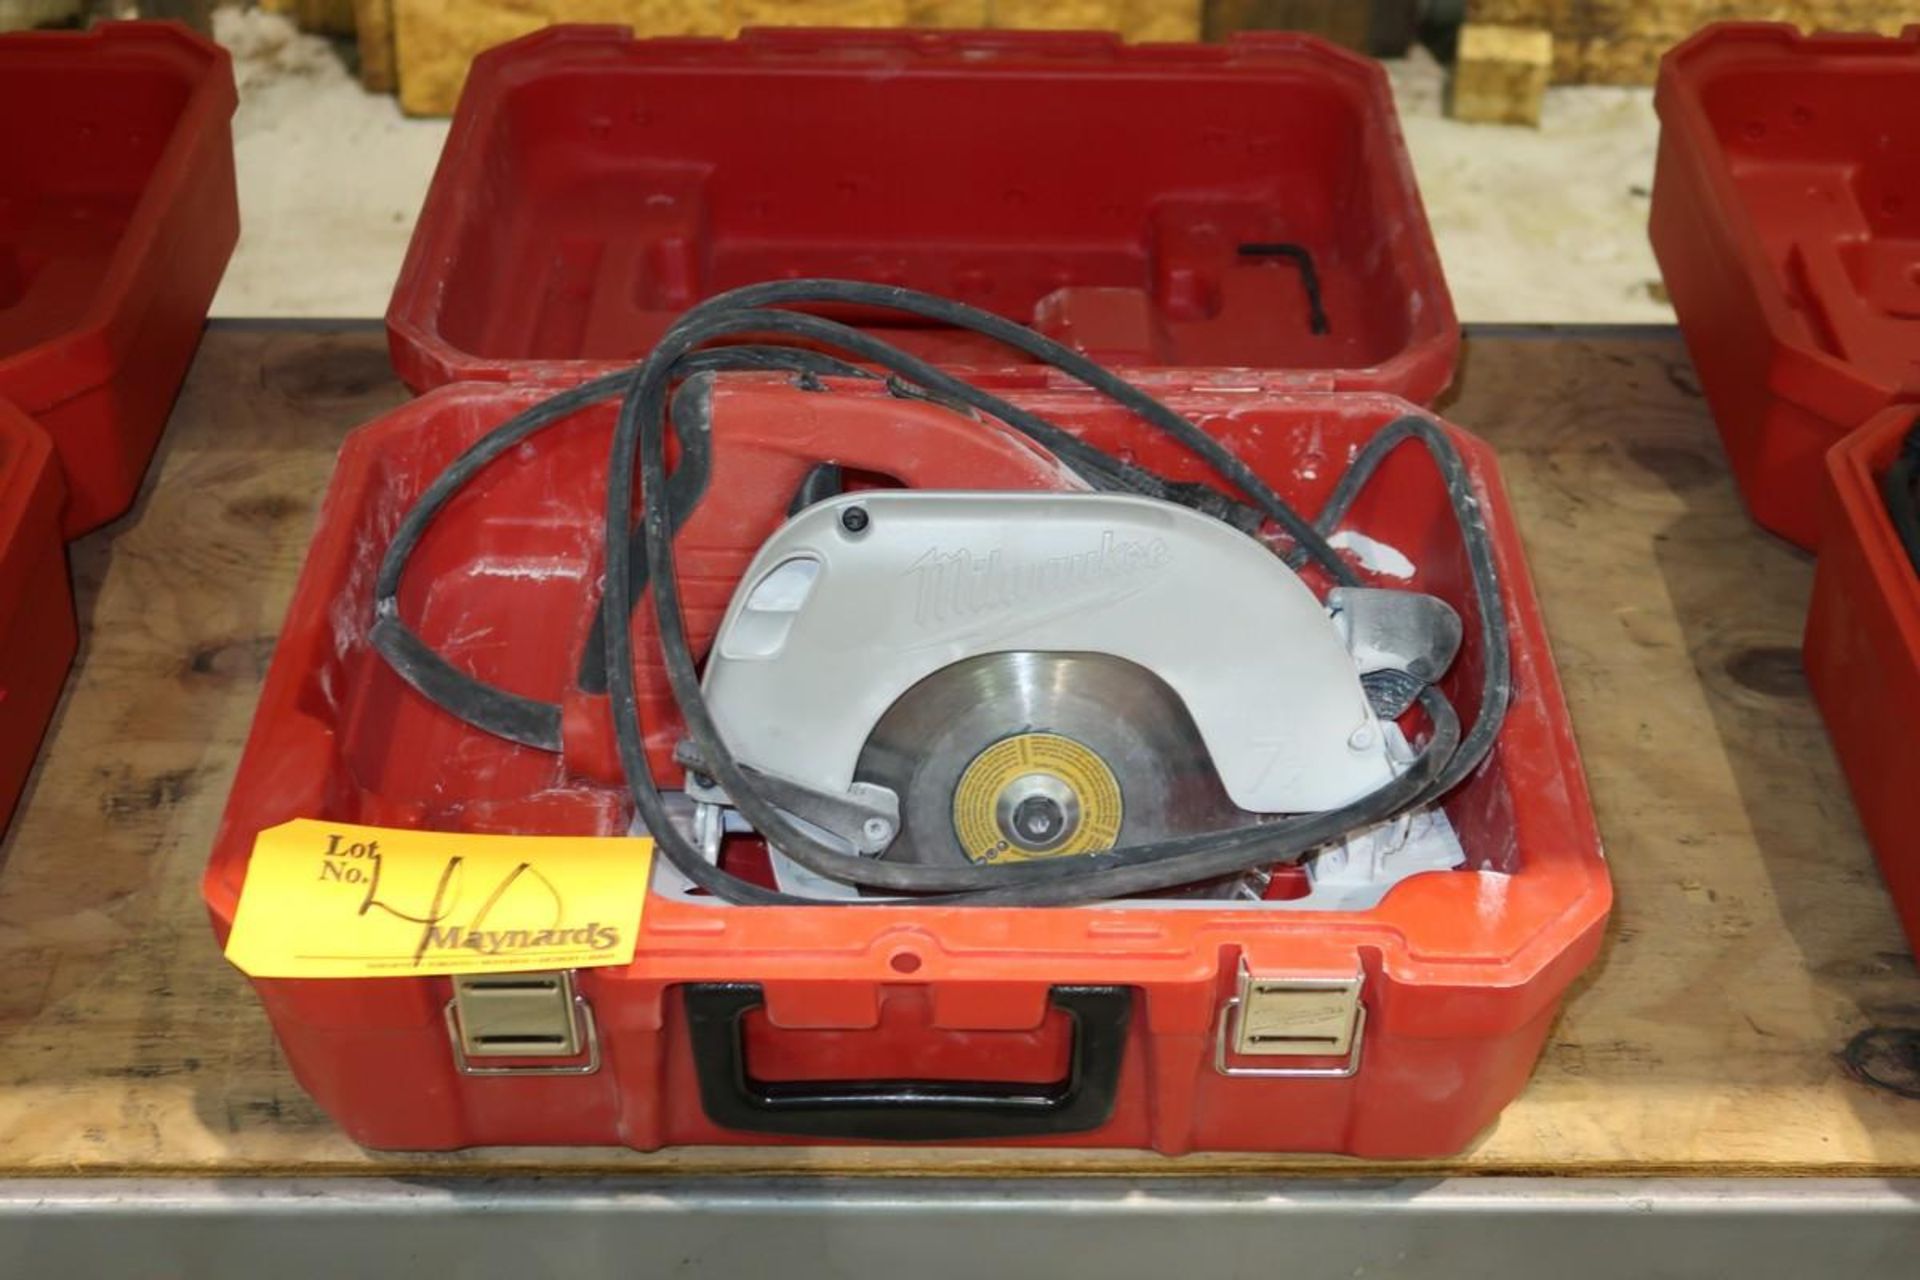 Milwaukee Heavy-duty 7-1/4'' power tilt-lock circular saw